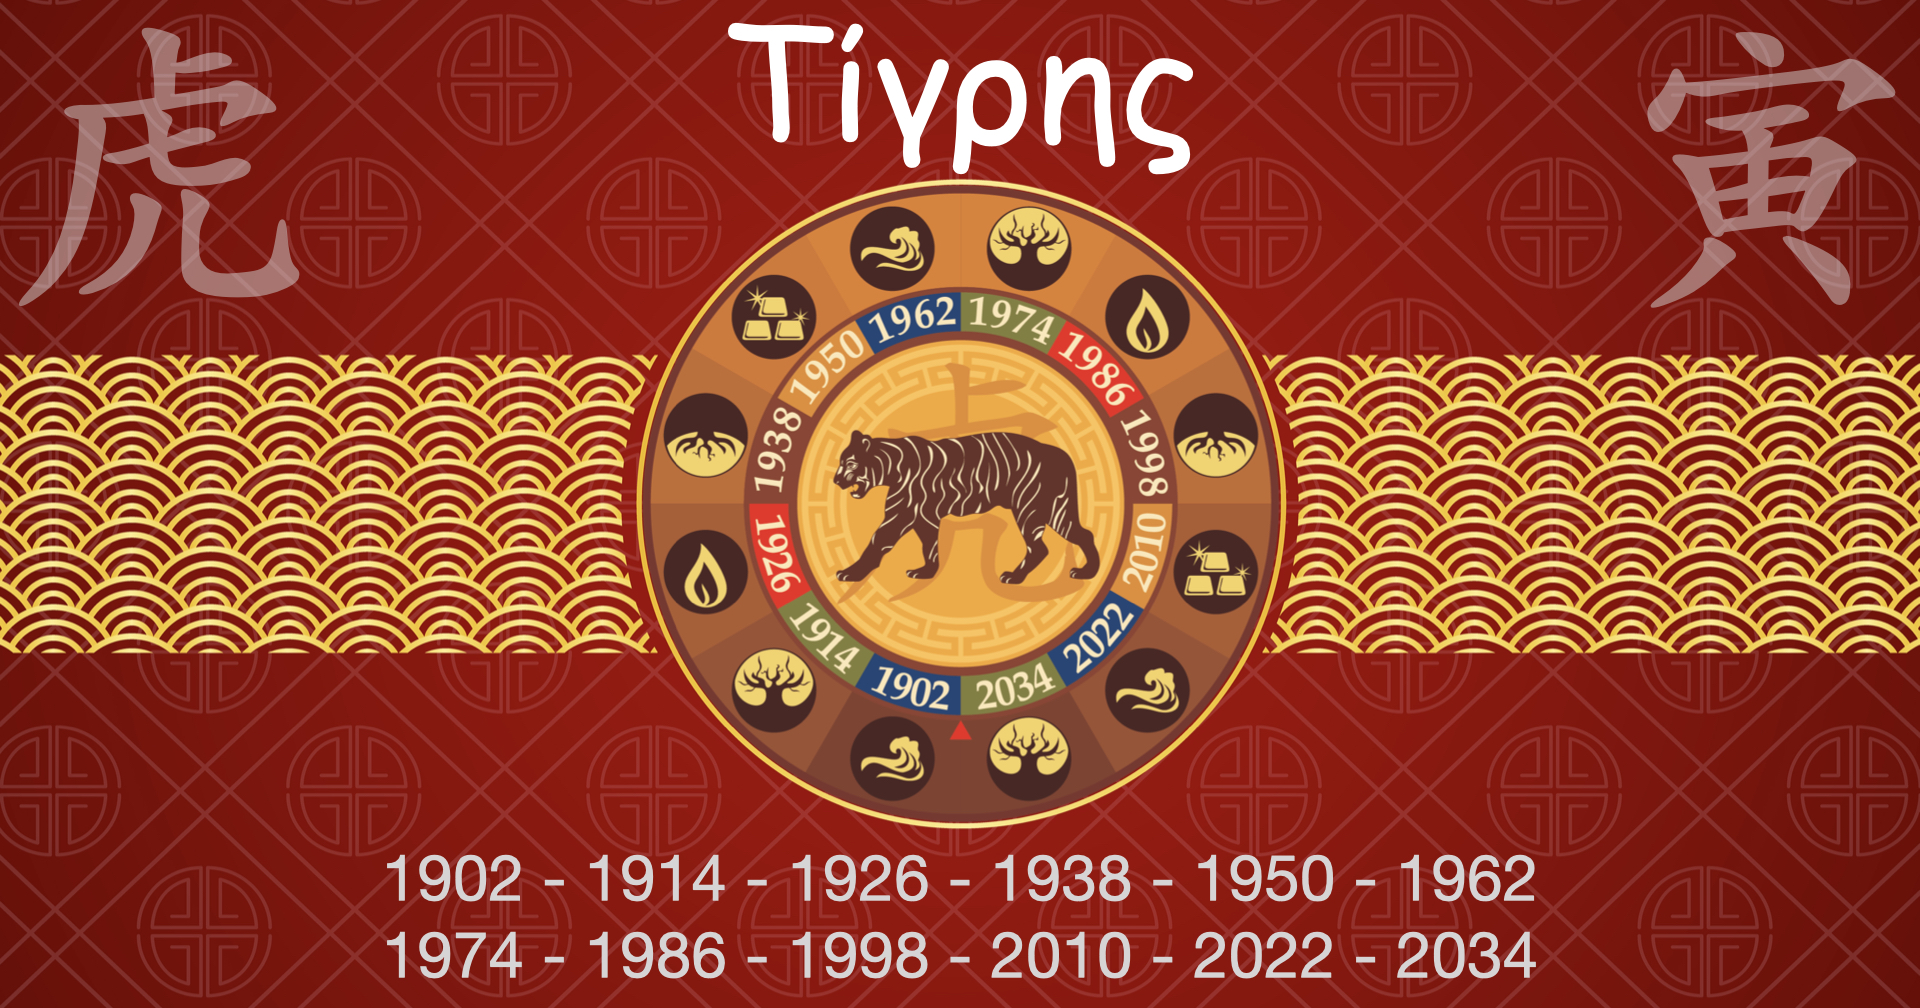 Κινέζικη Αστρολογία - Τίγρης